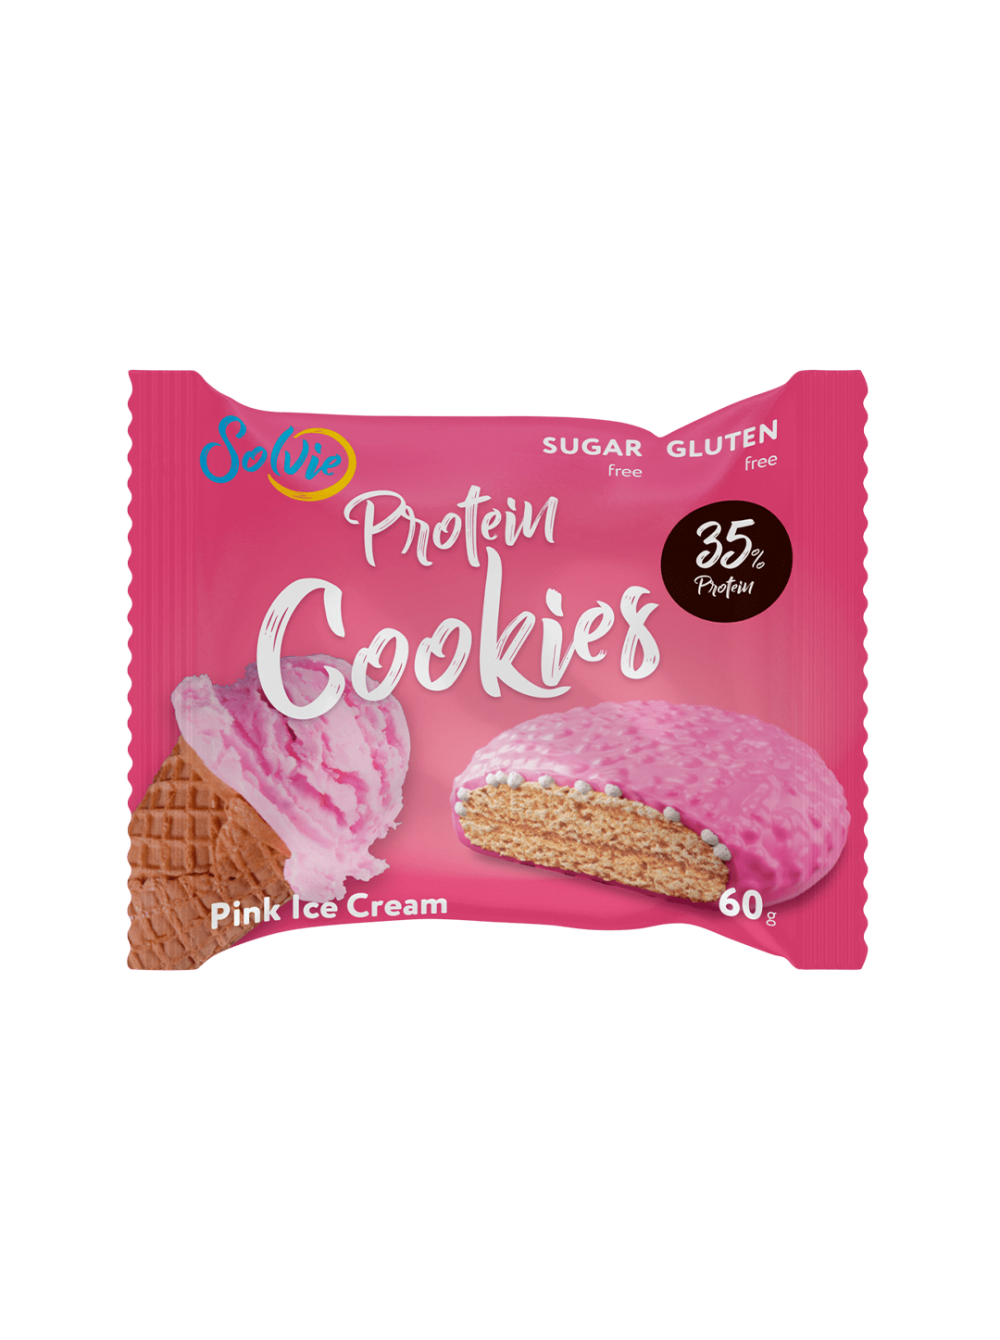 Печенье 35. Solvie протеиновое печенье. Protein cookies Solvie Pink Ice Cream. Cookies печенье протеиновые Solvie. Solvie Protein cookies в глазури (60 g).